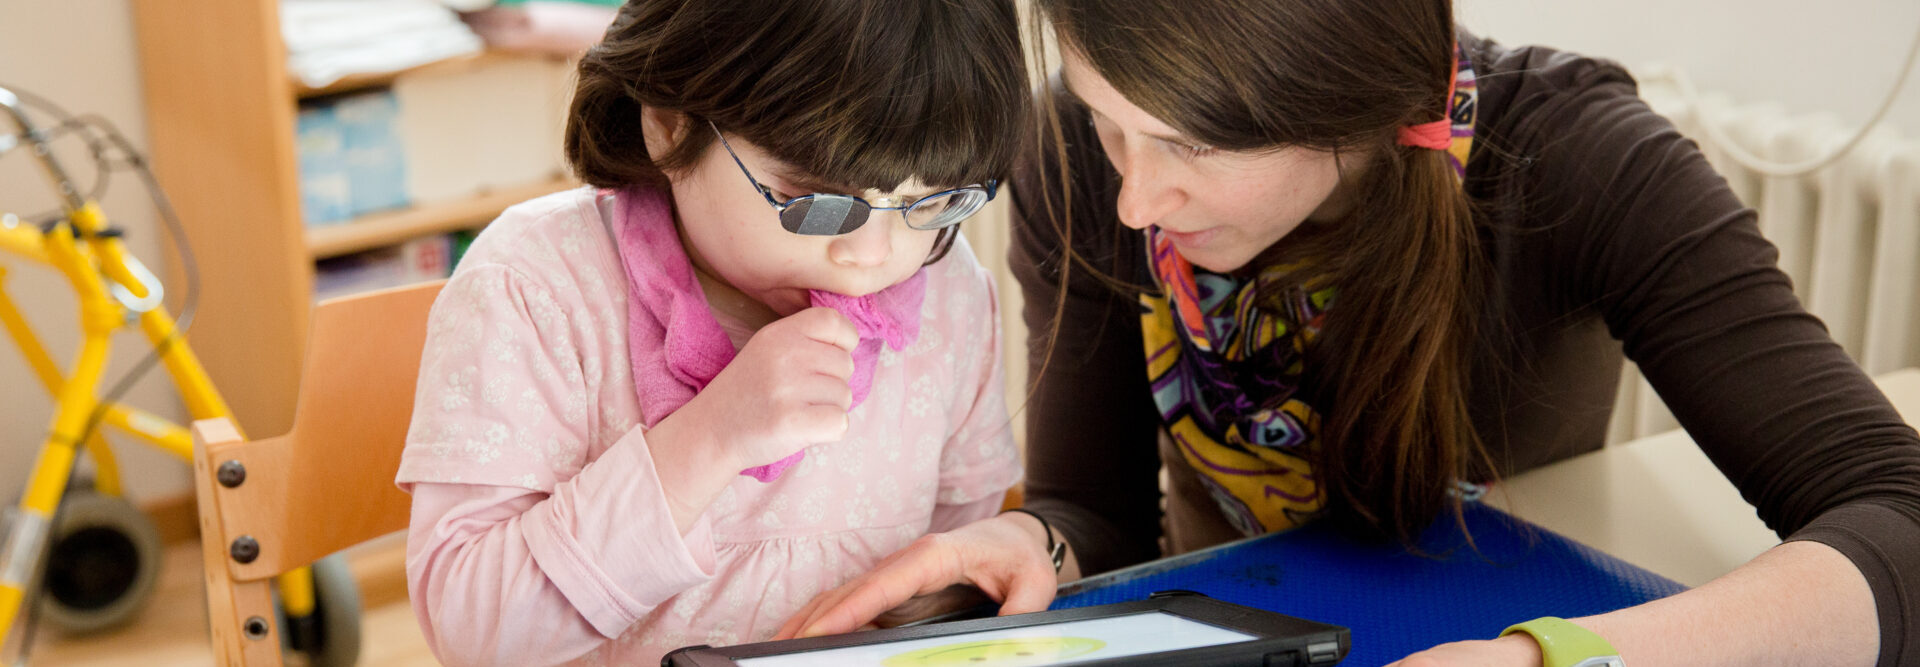 Bambina che lavora su un tablet supportata dall'insegnante. La tavoletta mostra una grande faccina gialla.